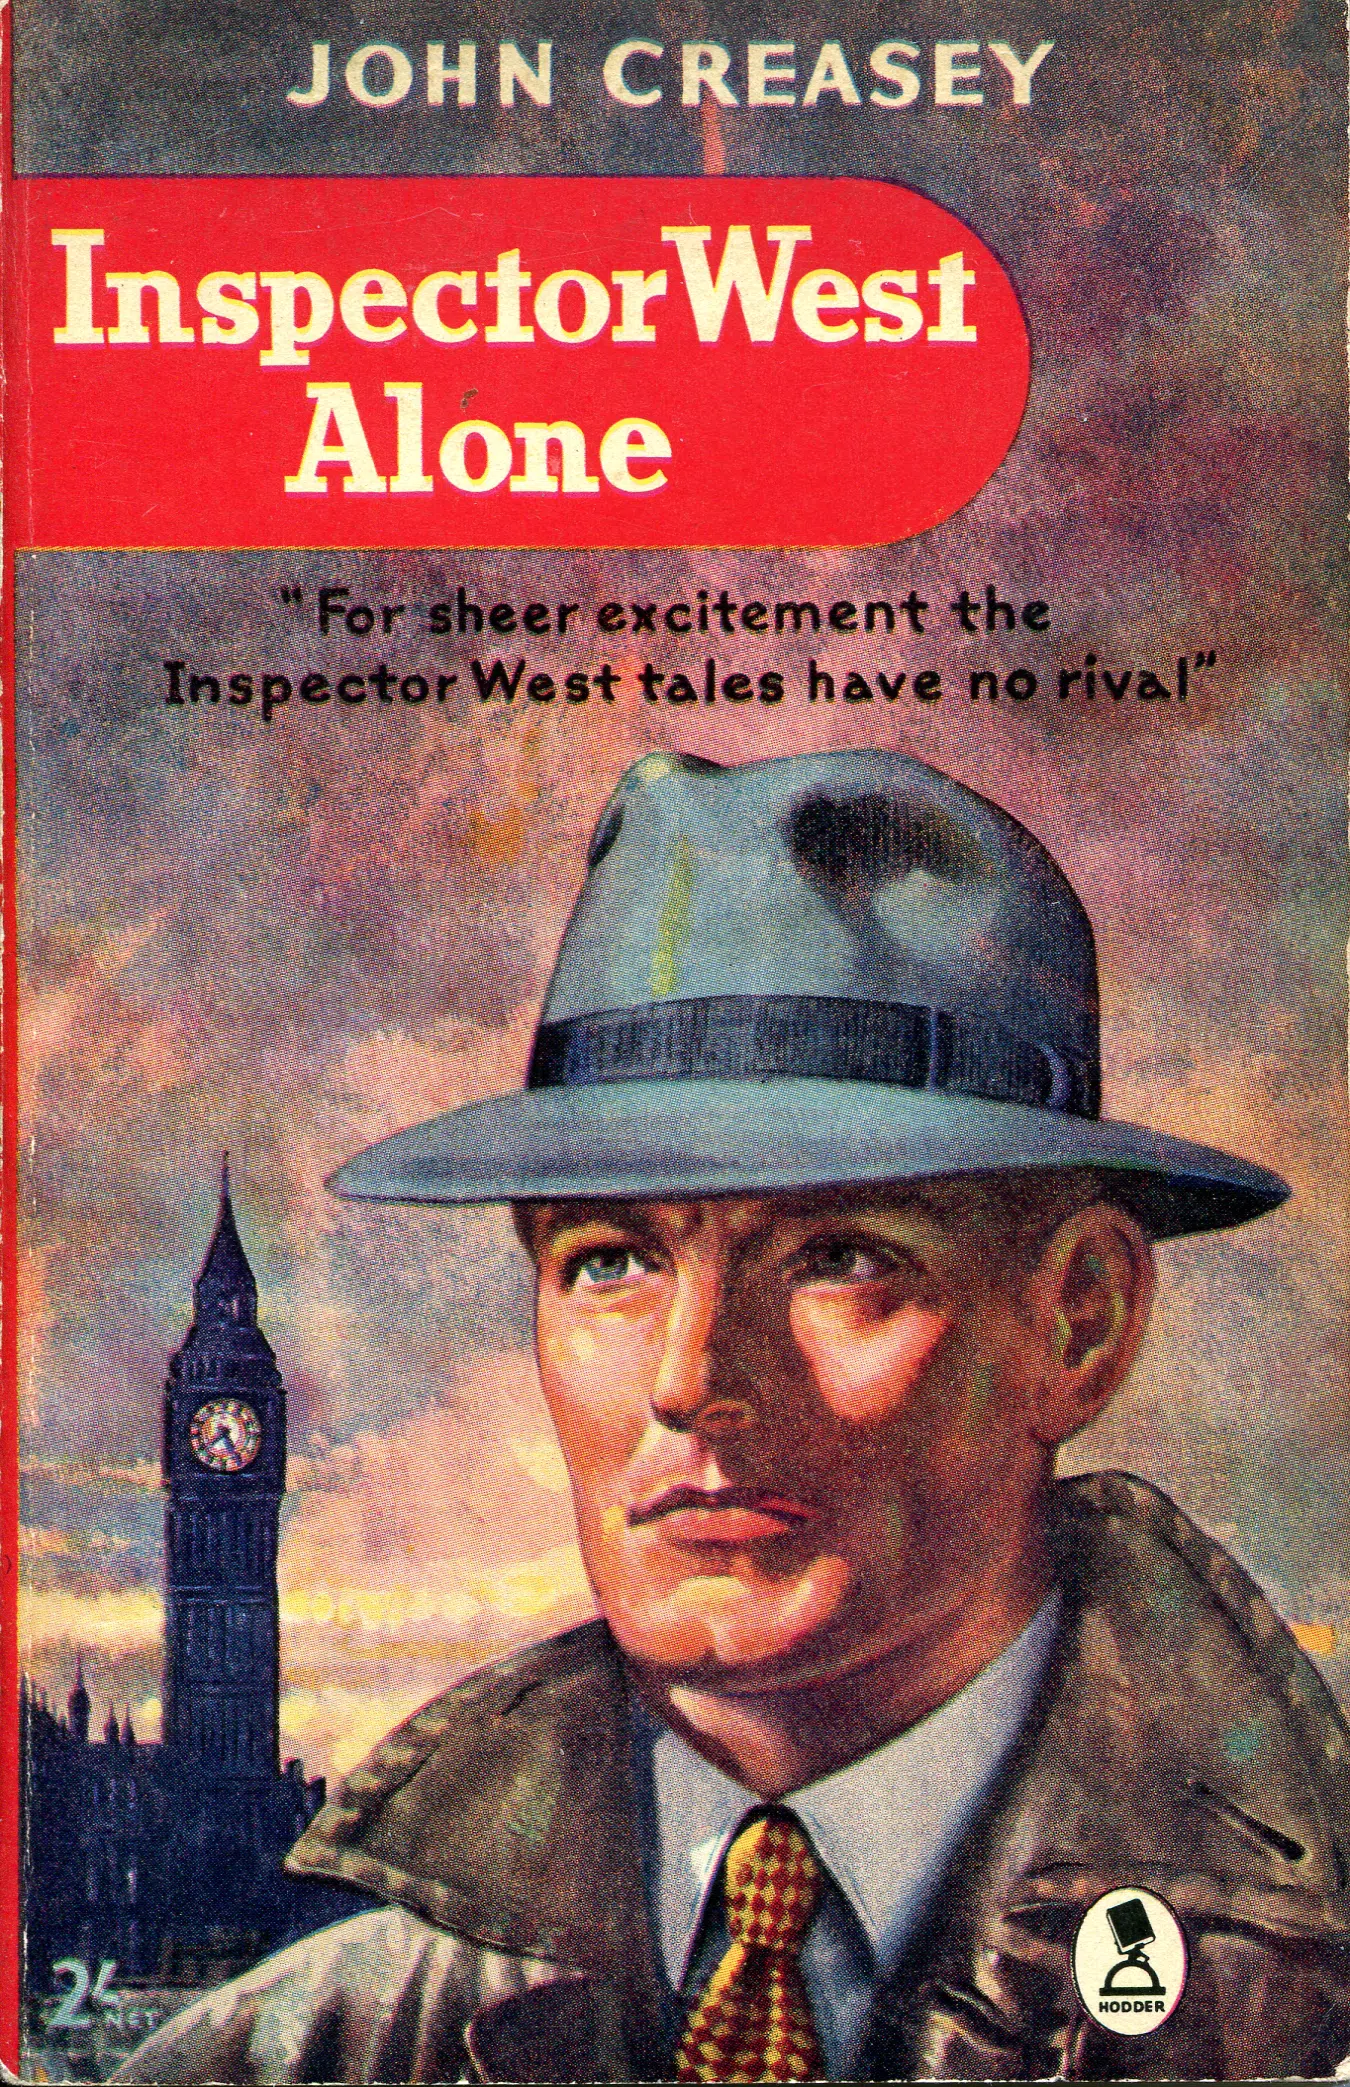 Обложка книги об инспекторе Уэсте